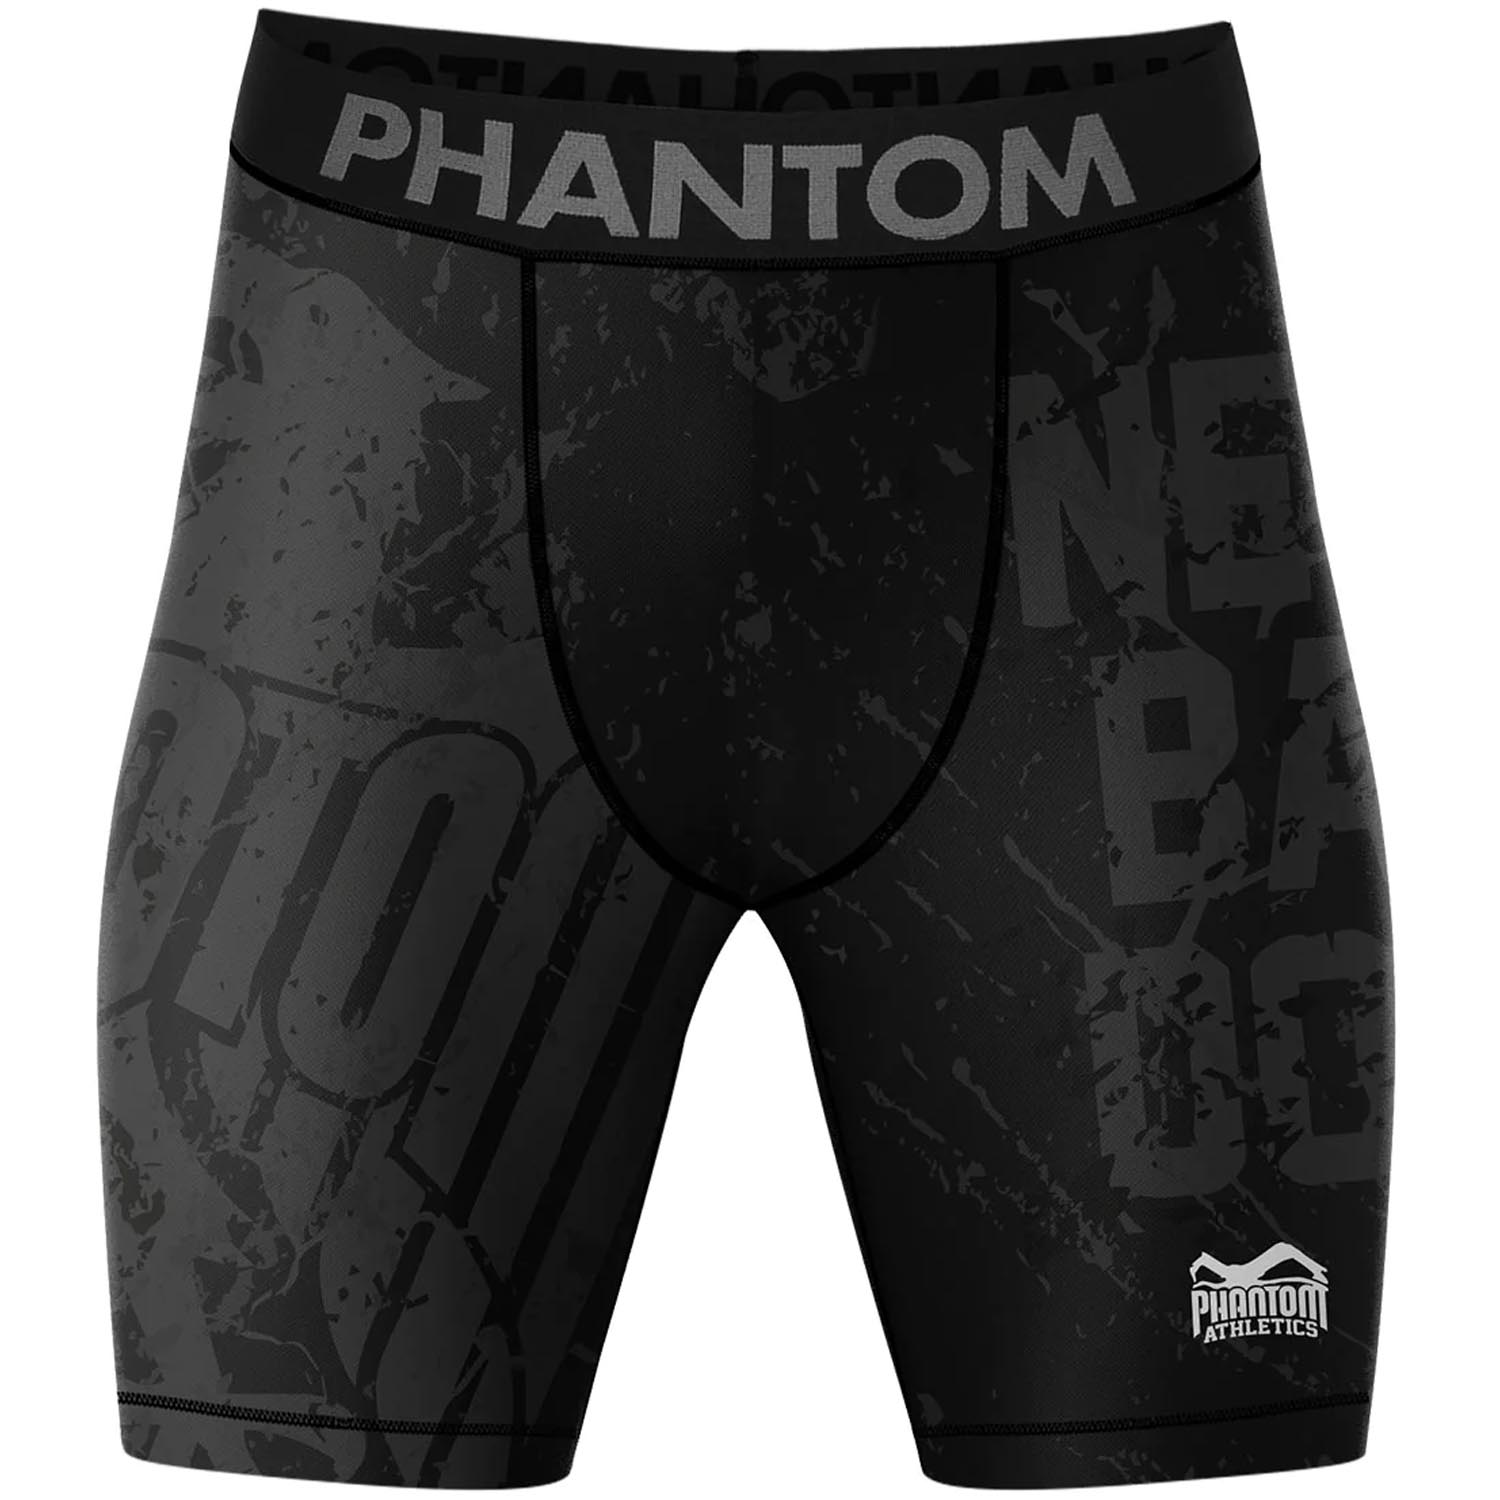 Phantom Athletics Compression Shorts, Germany, schwarz